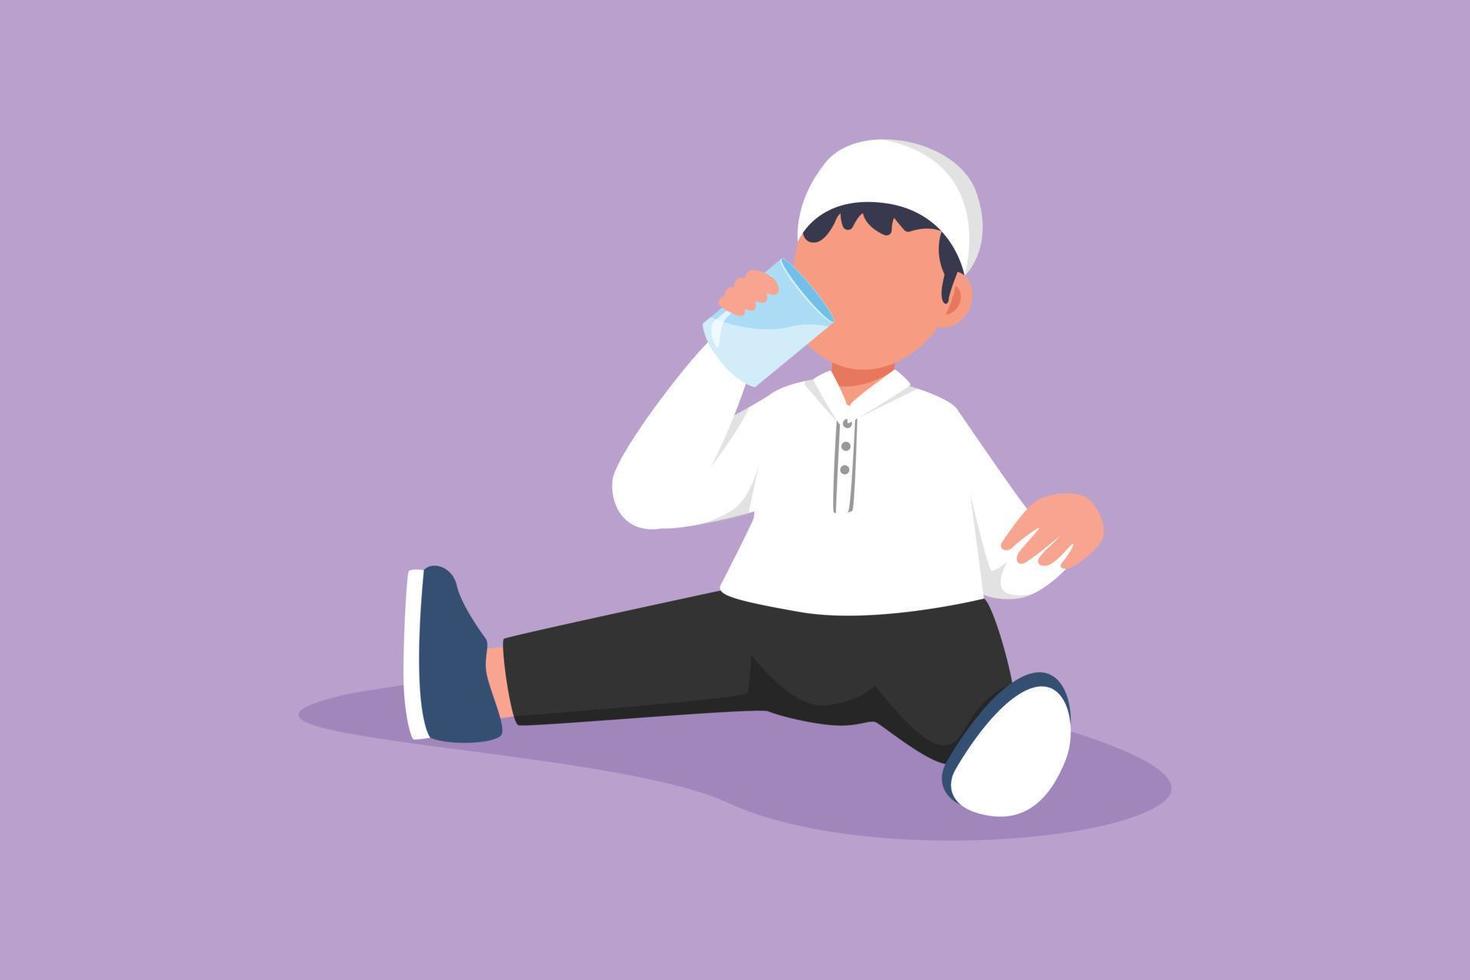 Charakter flache Zeichnung entzückender arabischer kleiner Junge, der sitzt, während er ein Glas frische Milch hält und genießt, um seine Körperernährung zu erfüllen. kindergesundheits- oder wachstumskonzept. Cartoon-Design-Vektor-Illustration vektor